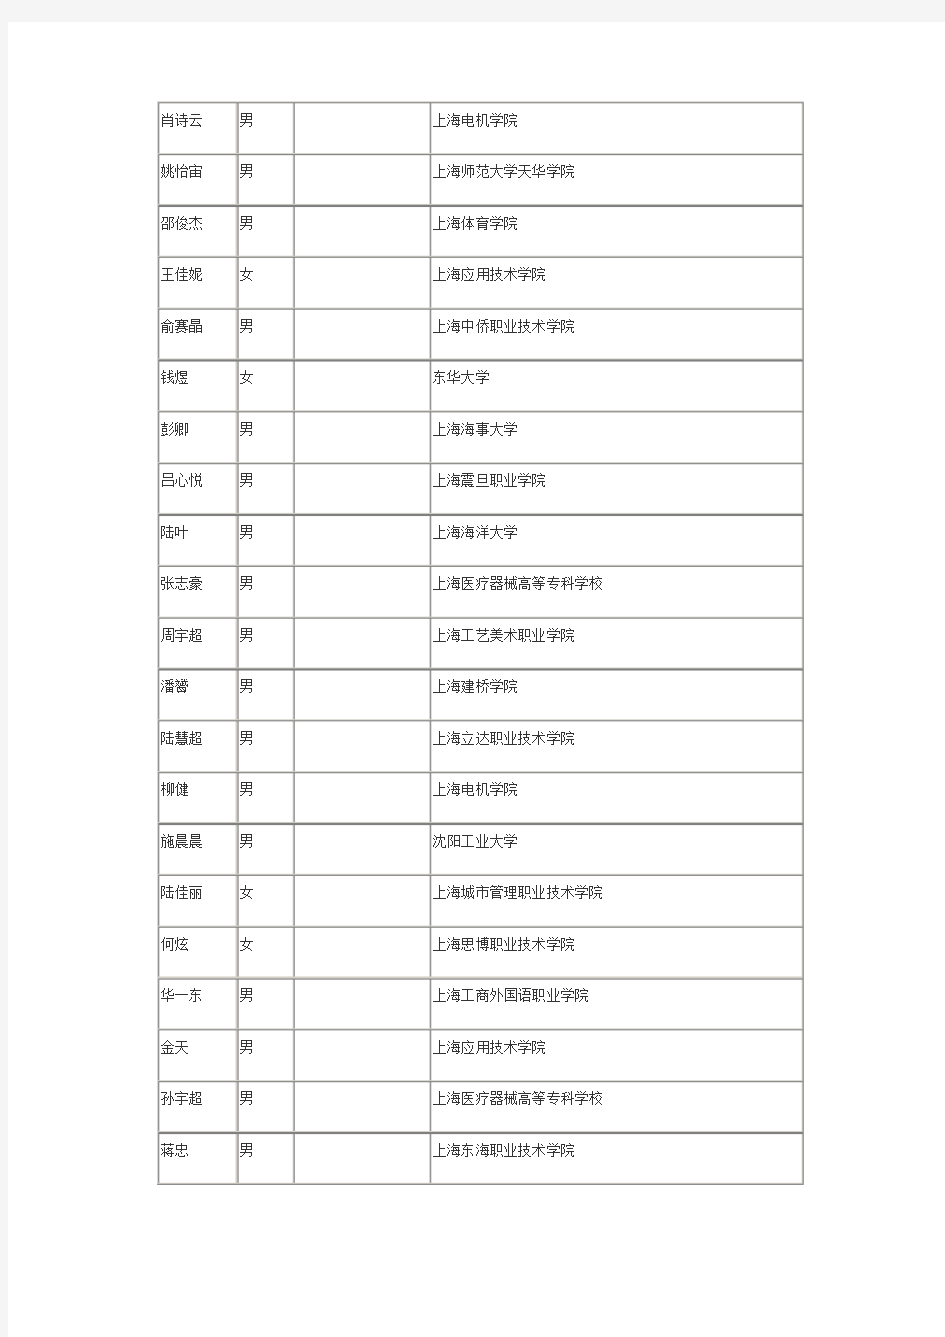 上海招警考试录用公安人民警察学员公示名单